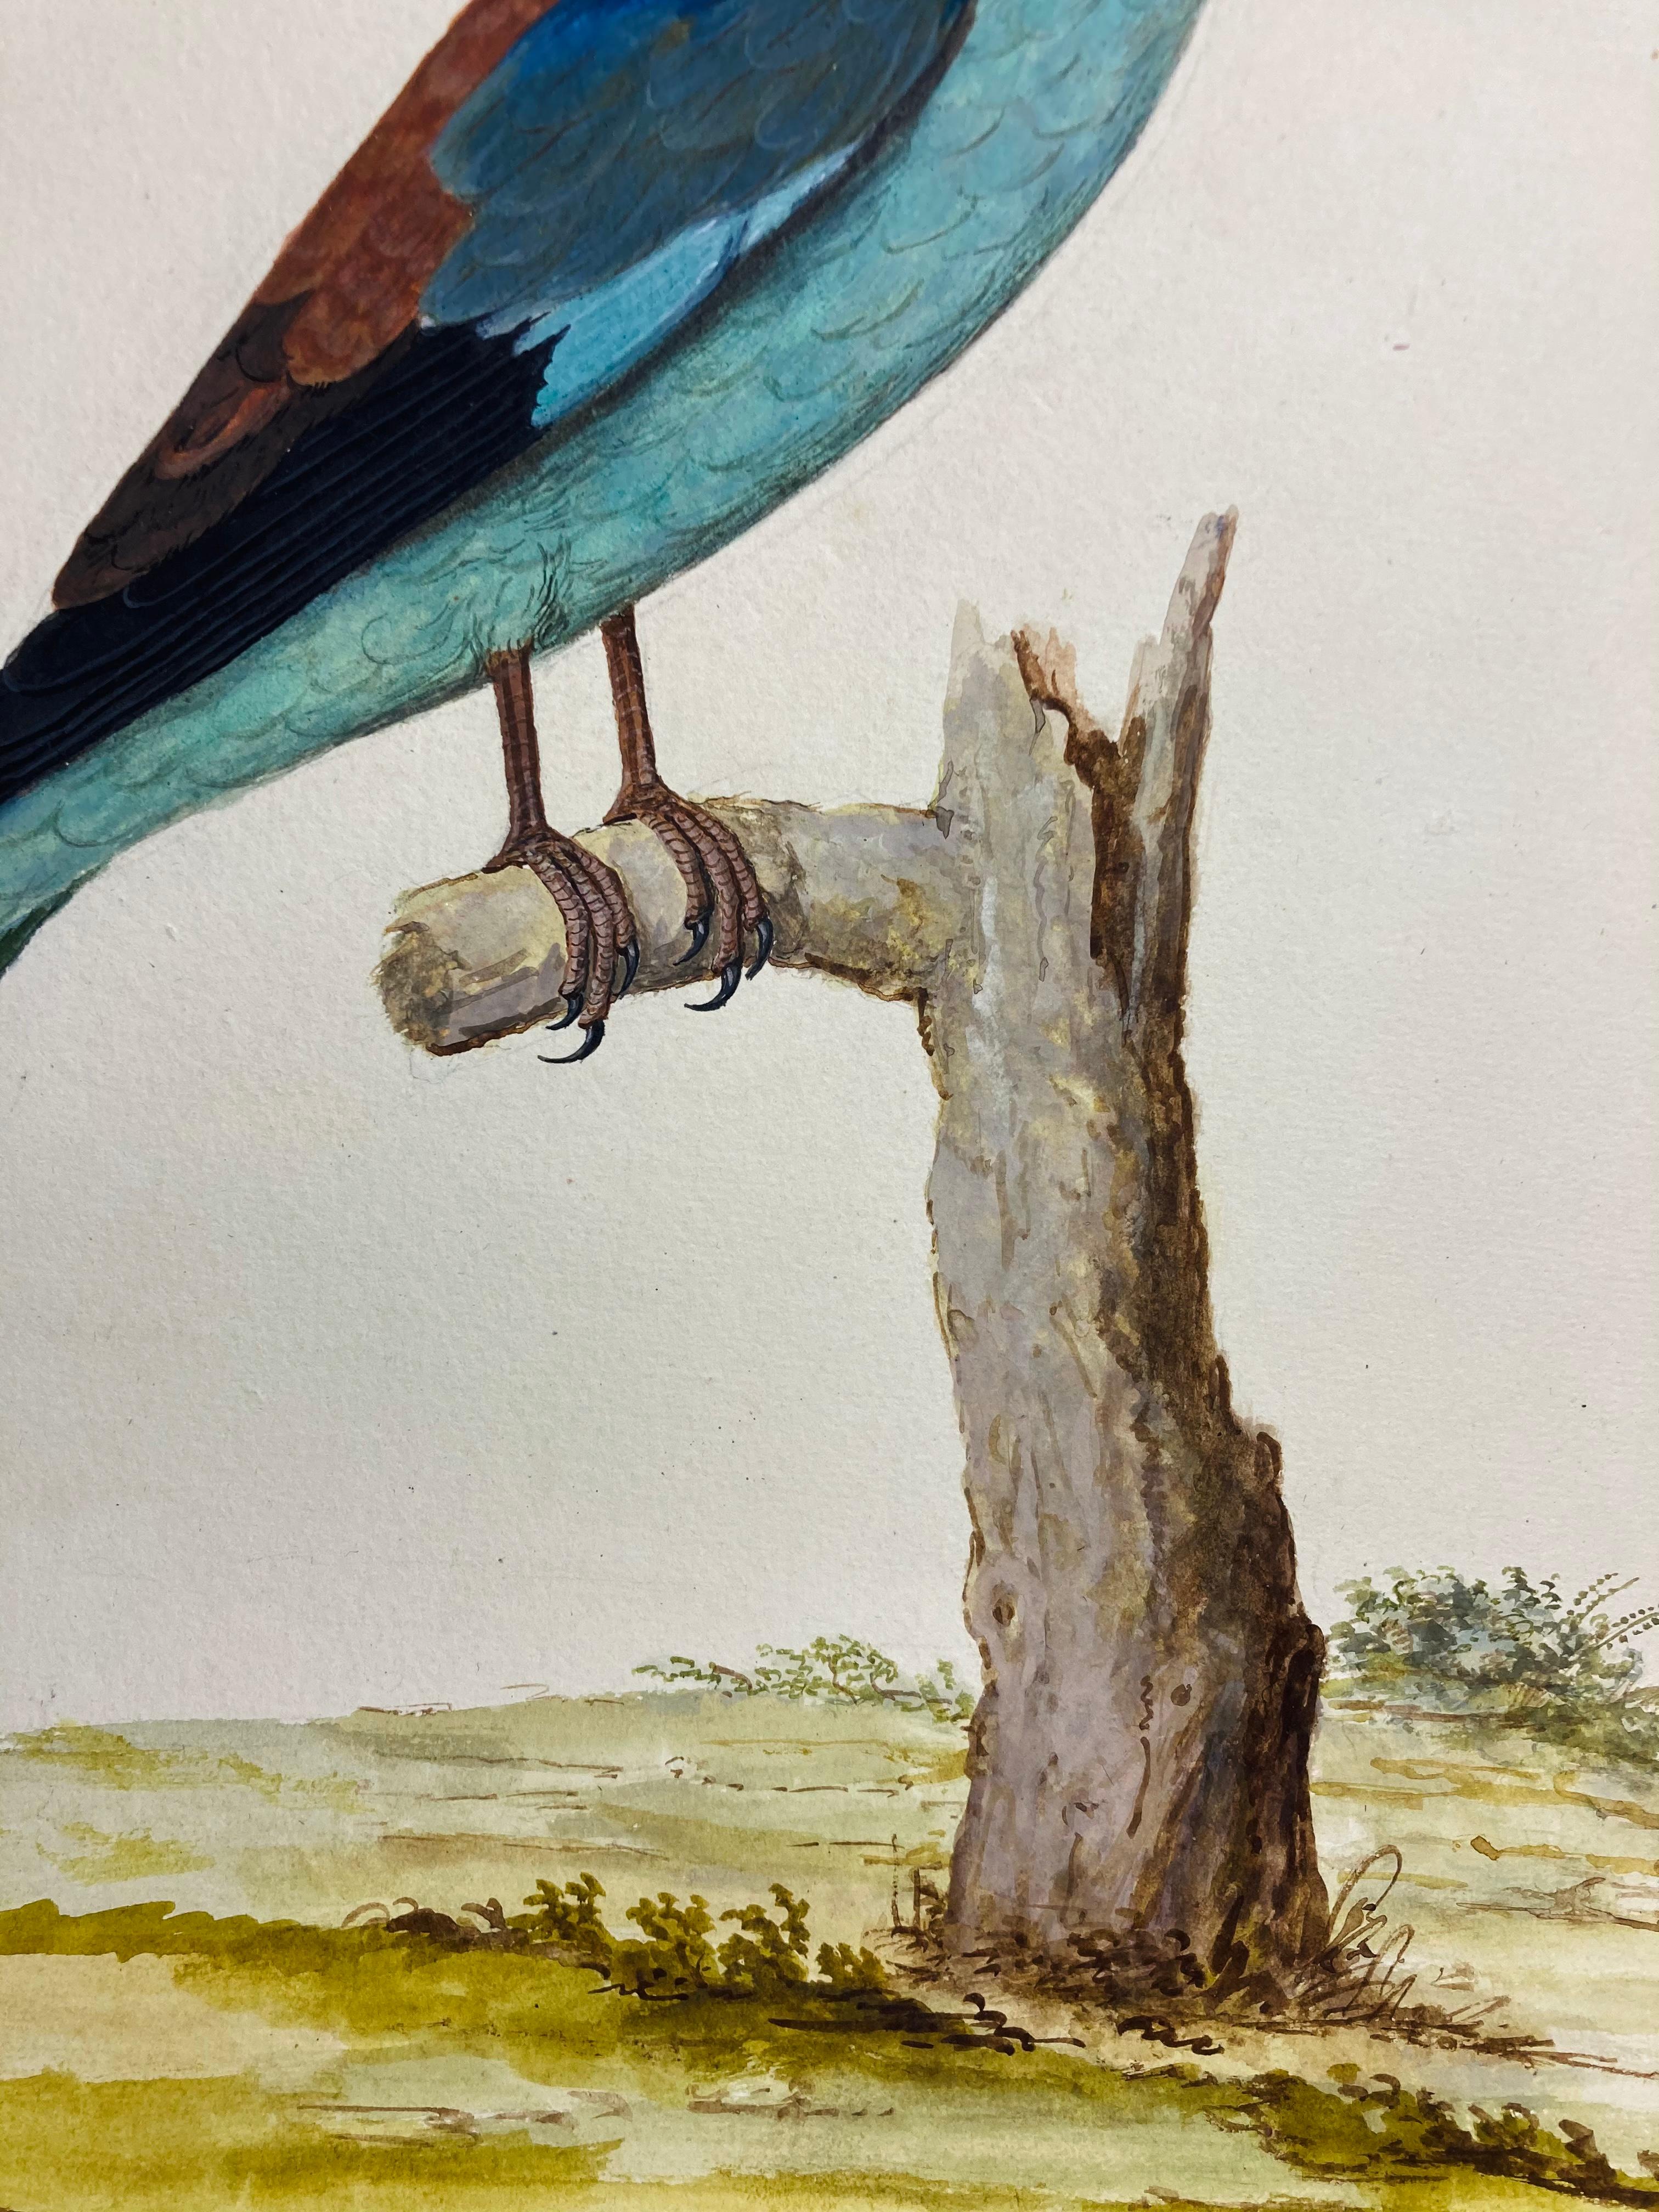 Wildleben-Zeichnung eines jayischen Vogels in Hellblau von einem erleuchteten britischen Maler (Grau), Animal Art, von Peter Paillou